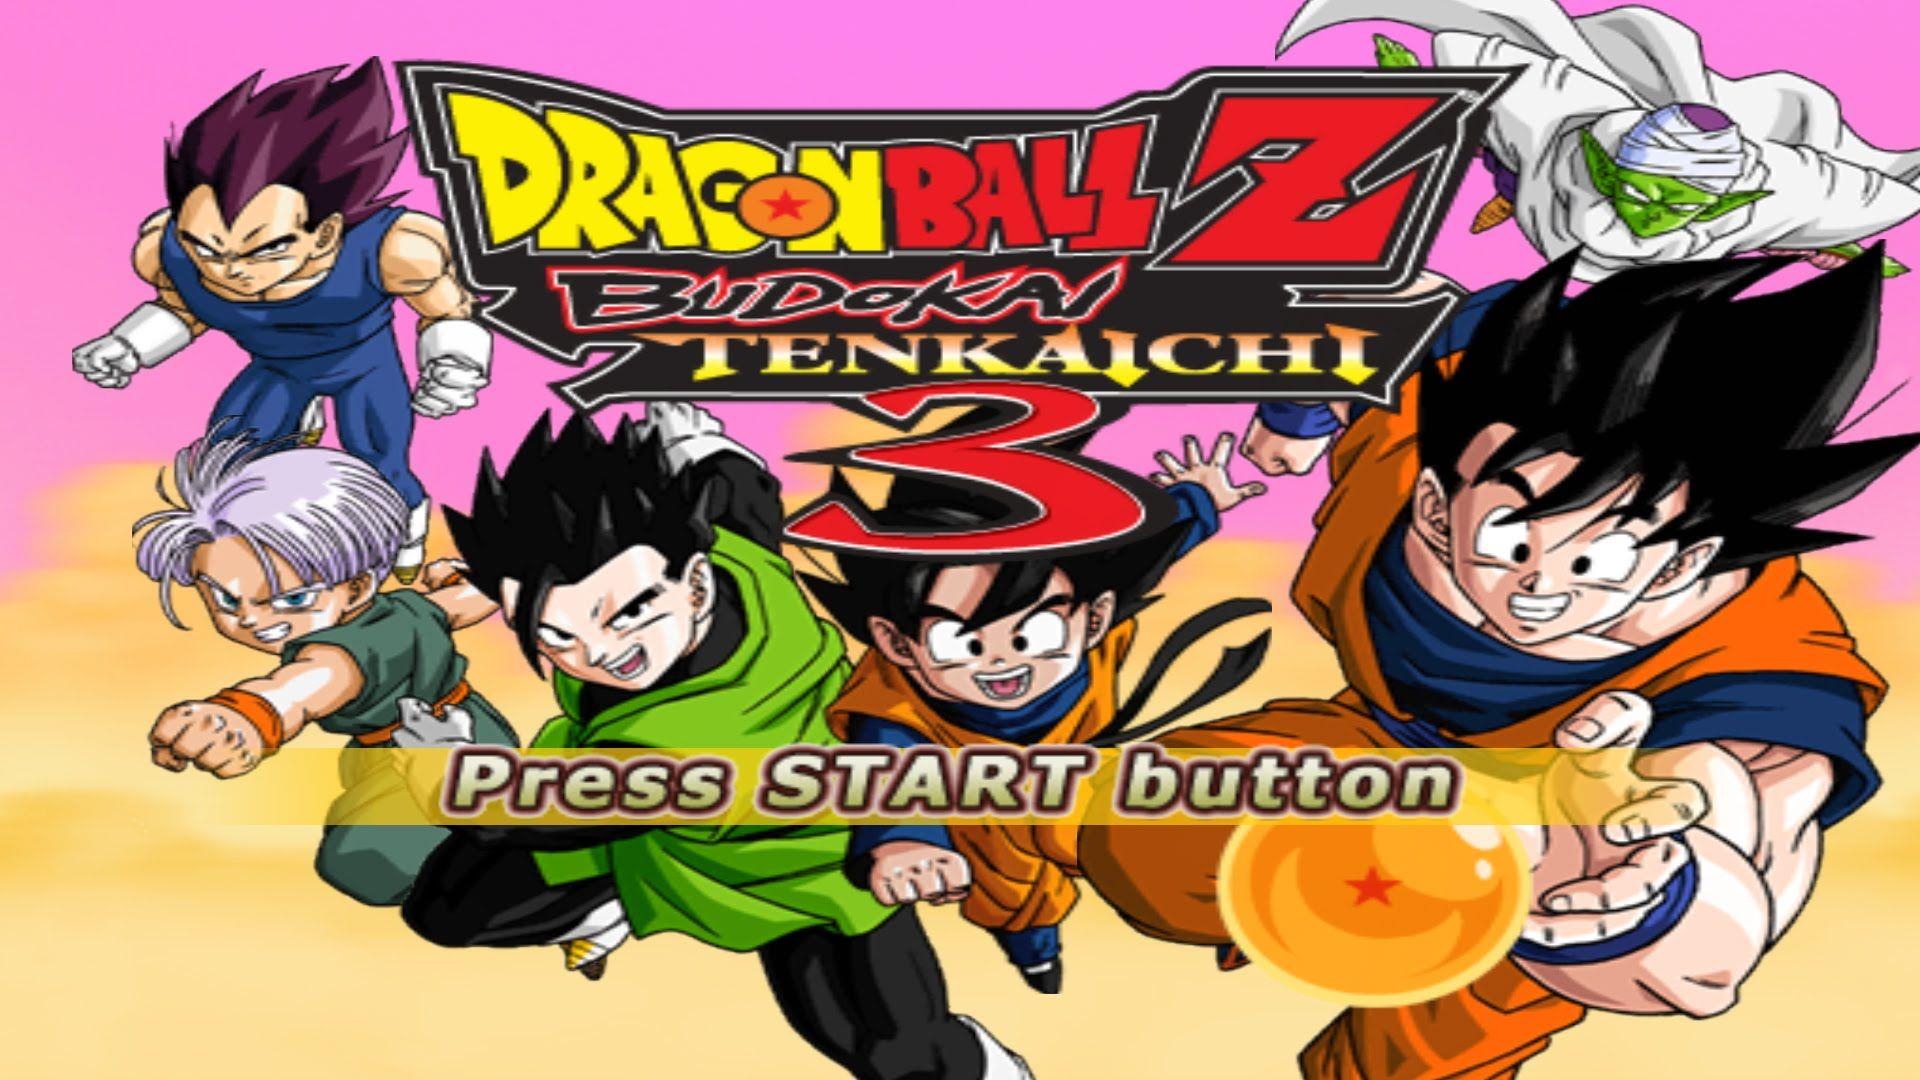 Dragon Ball Z Budokai Tenkaichi 3 PS2 ISO Highly Compressed